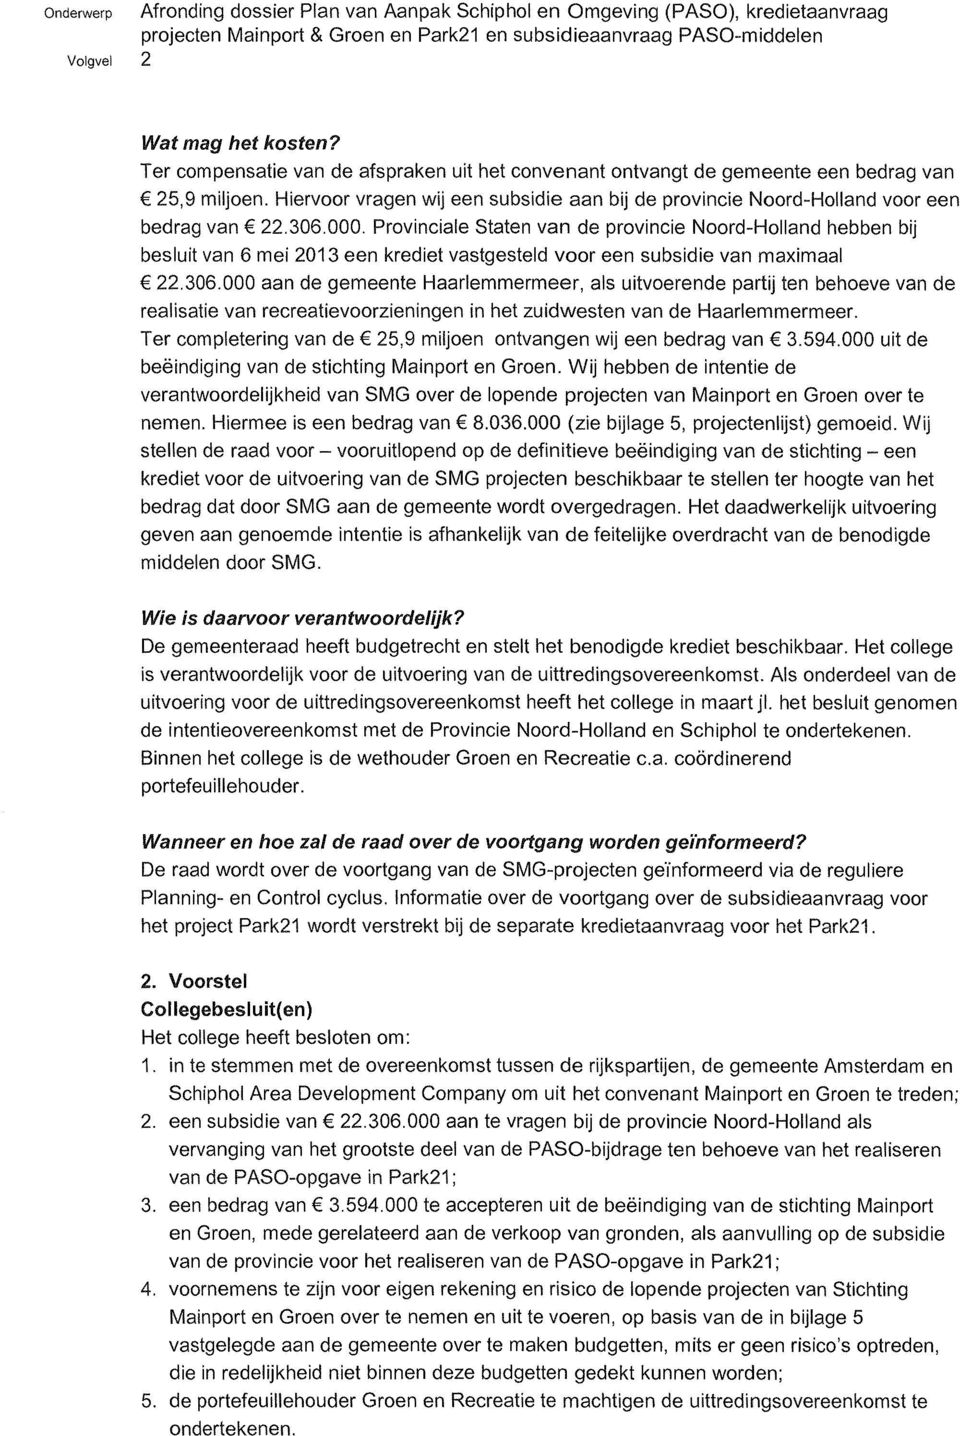 Provinciale Staten van de provincie Noord-Holland hebben bij besluit van 6 mei 2013 een krediet vastgesteld voor een subsidie van maximaal 22.306.